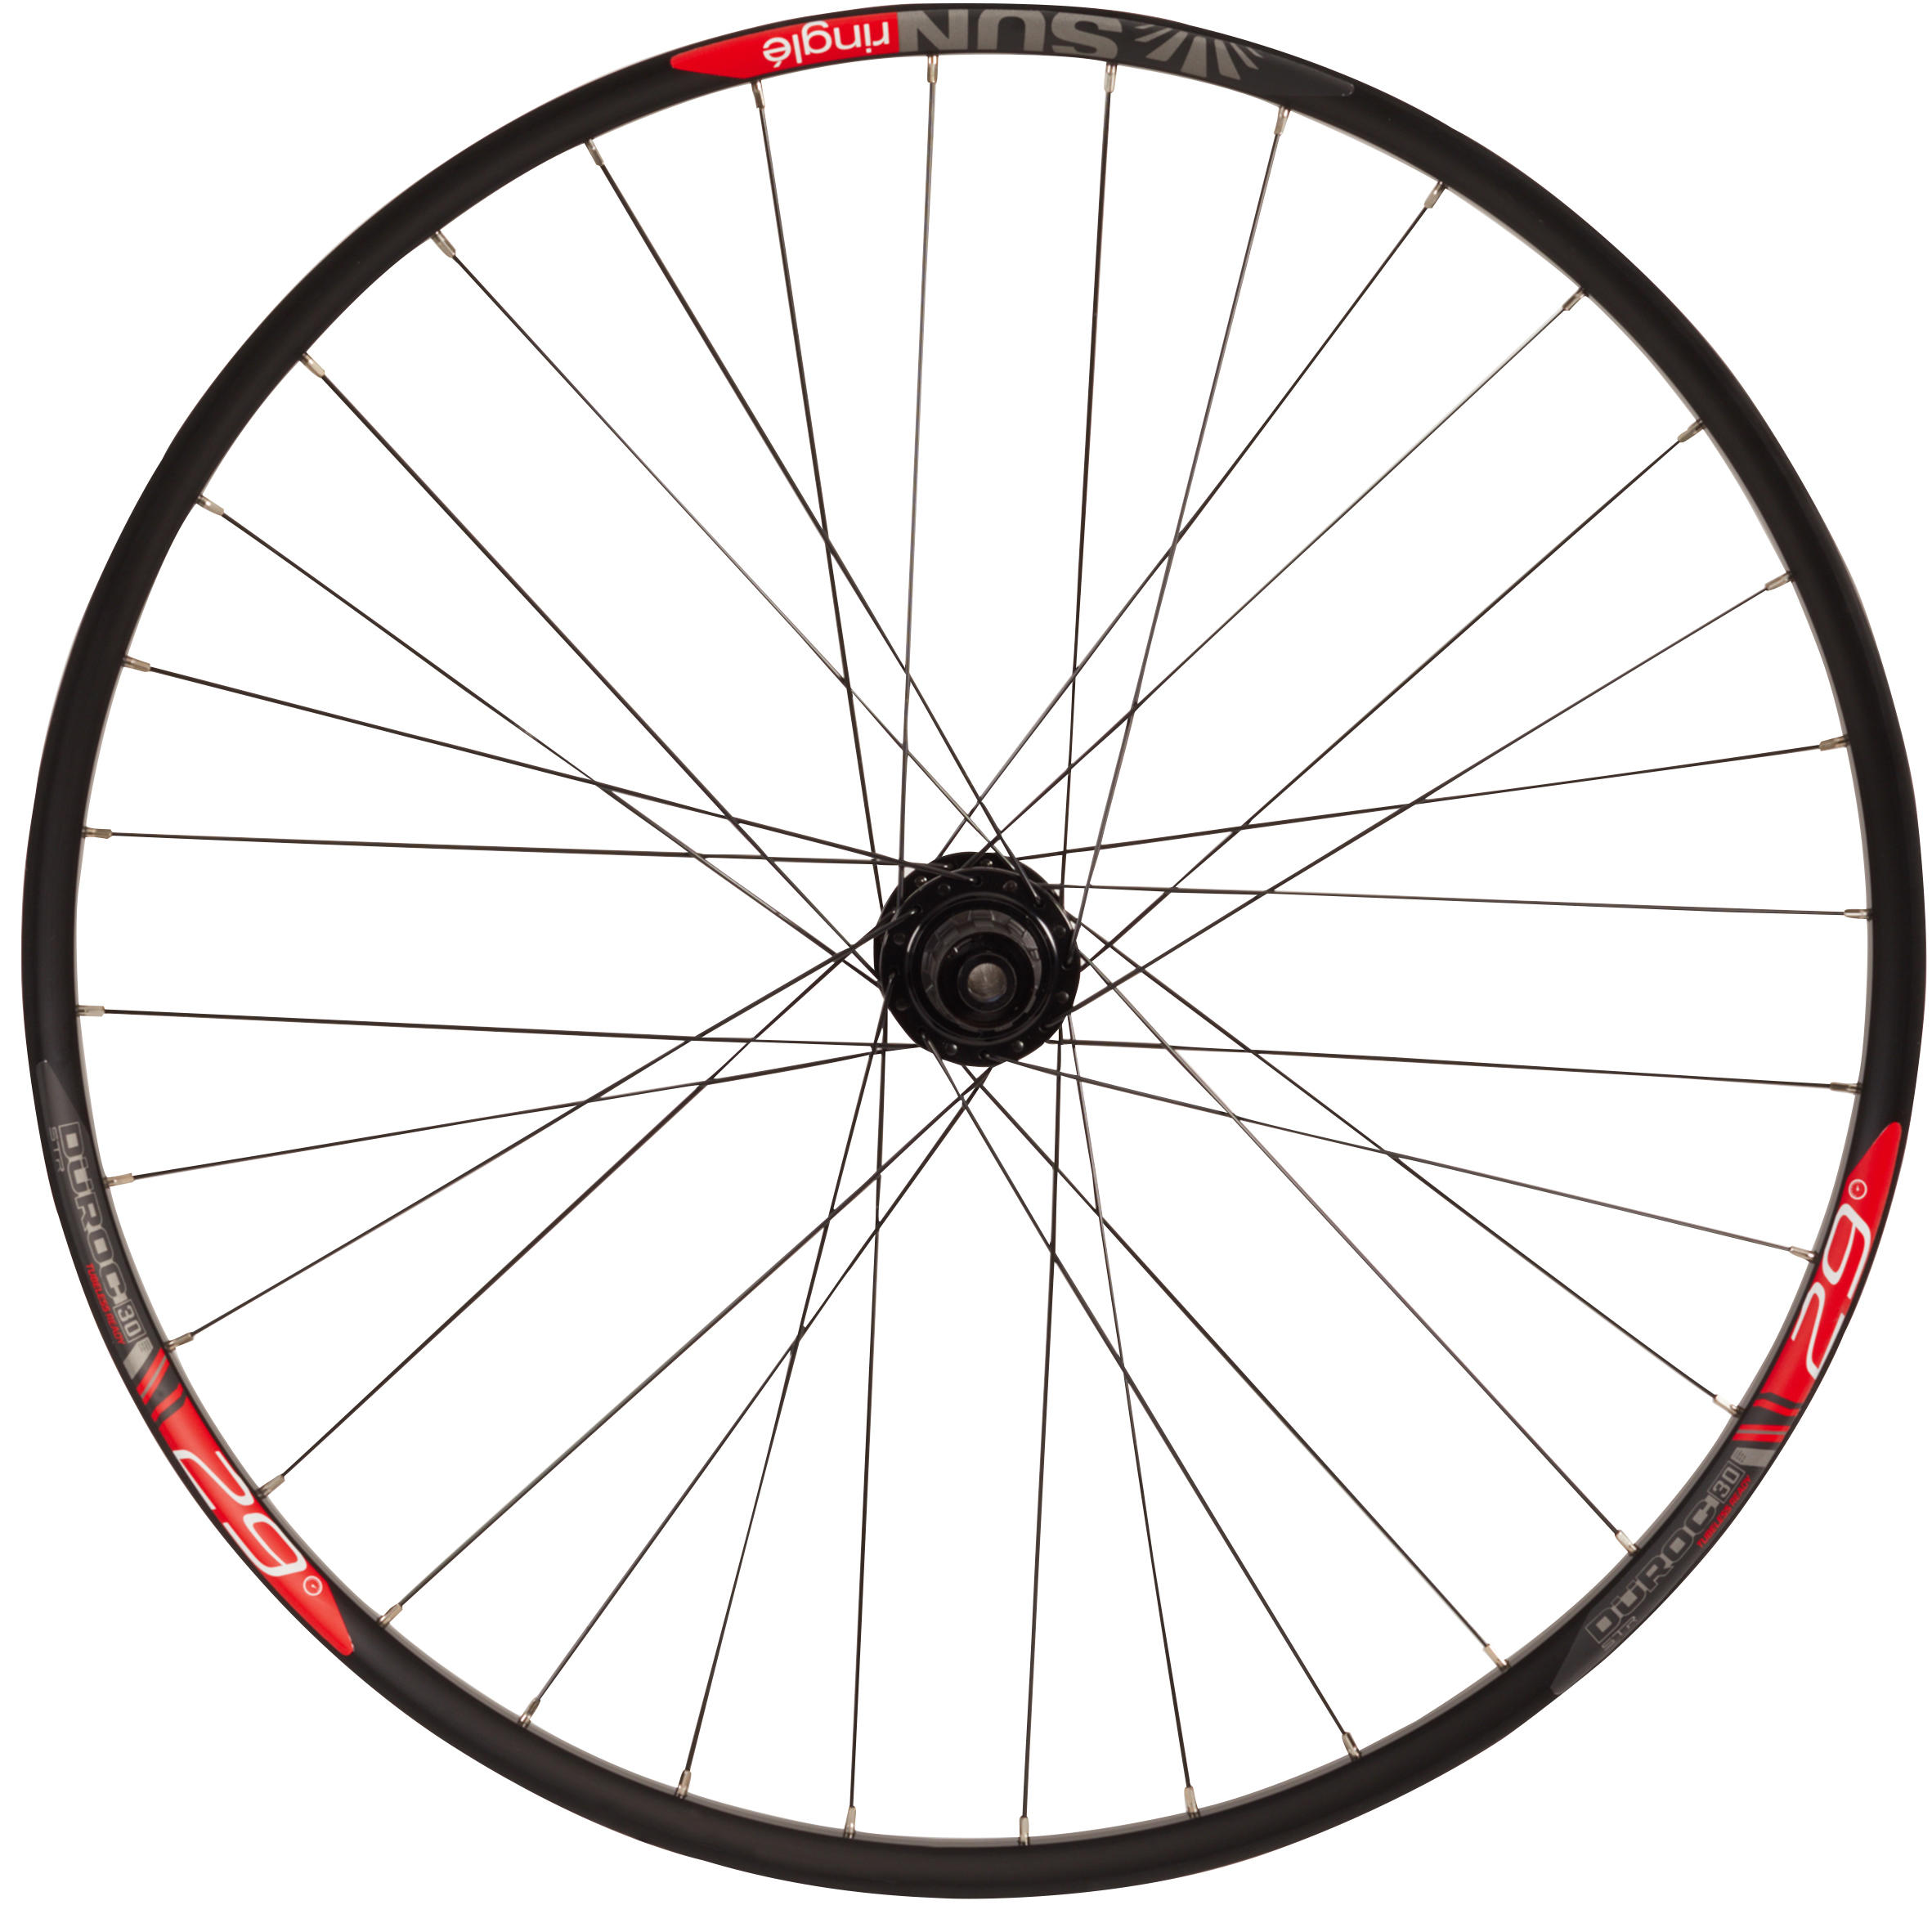 SUNRINGLE Mountain Bike Rear Wheel 29" Double Wall Cassette Disc Boost 12x148 Duroc 30